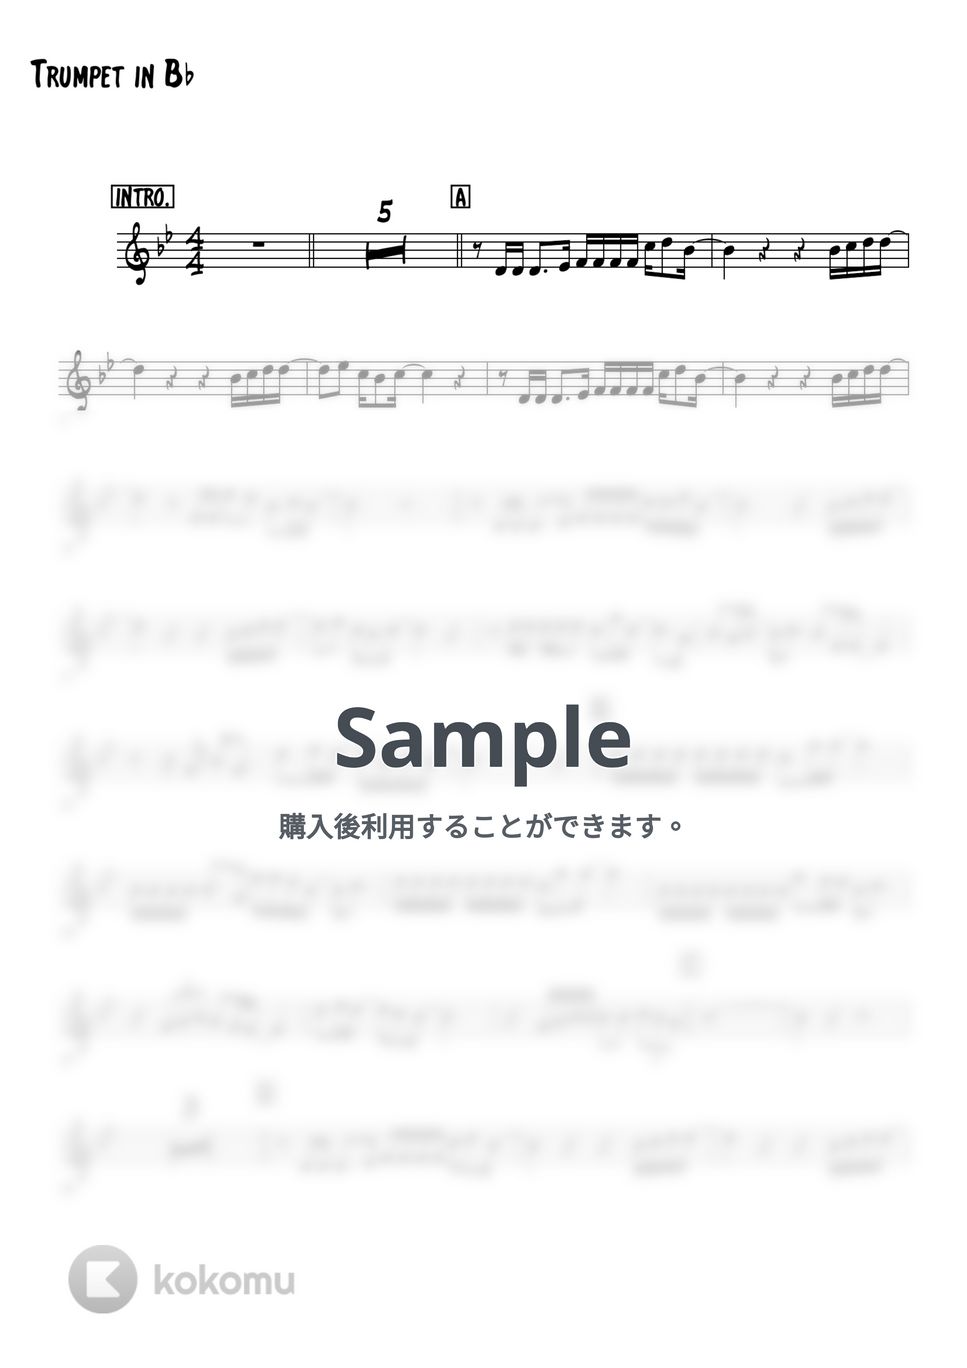 みゆき - 想い出がいっぱい (トランペットメロディー楽譜) by 高田将利